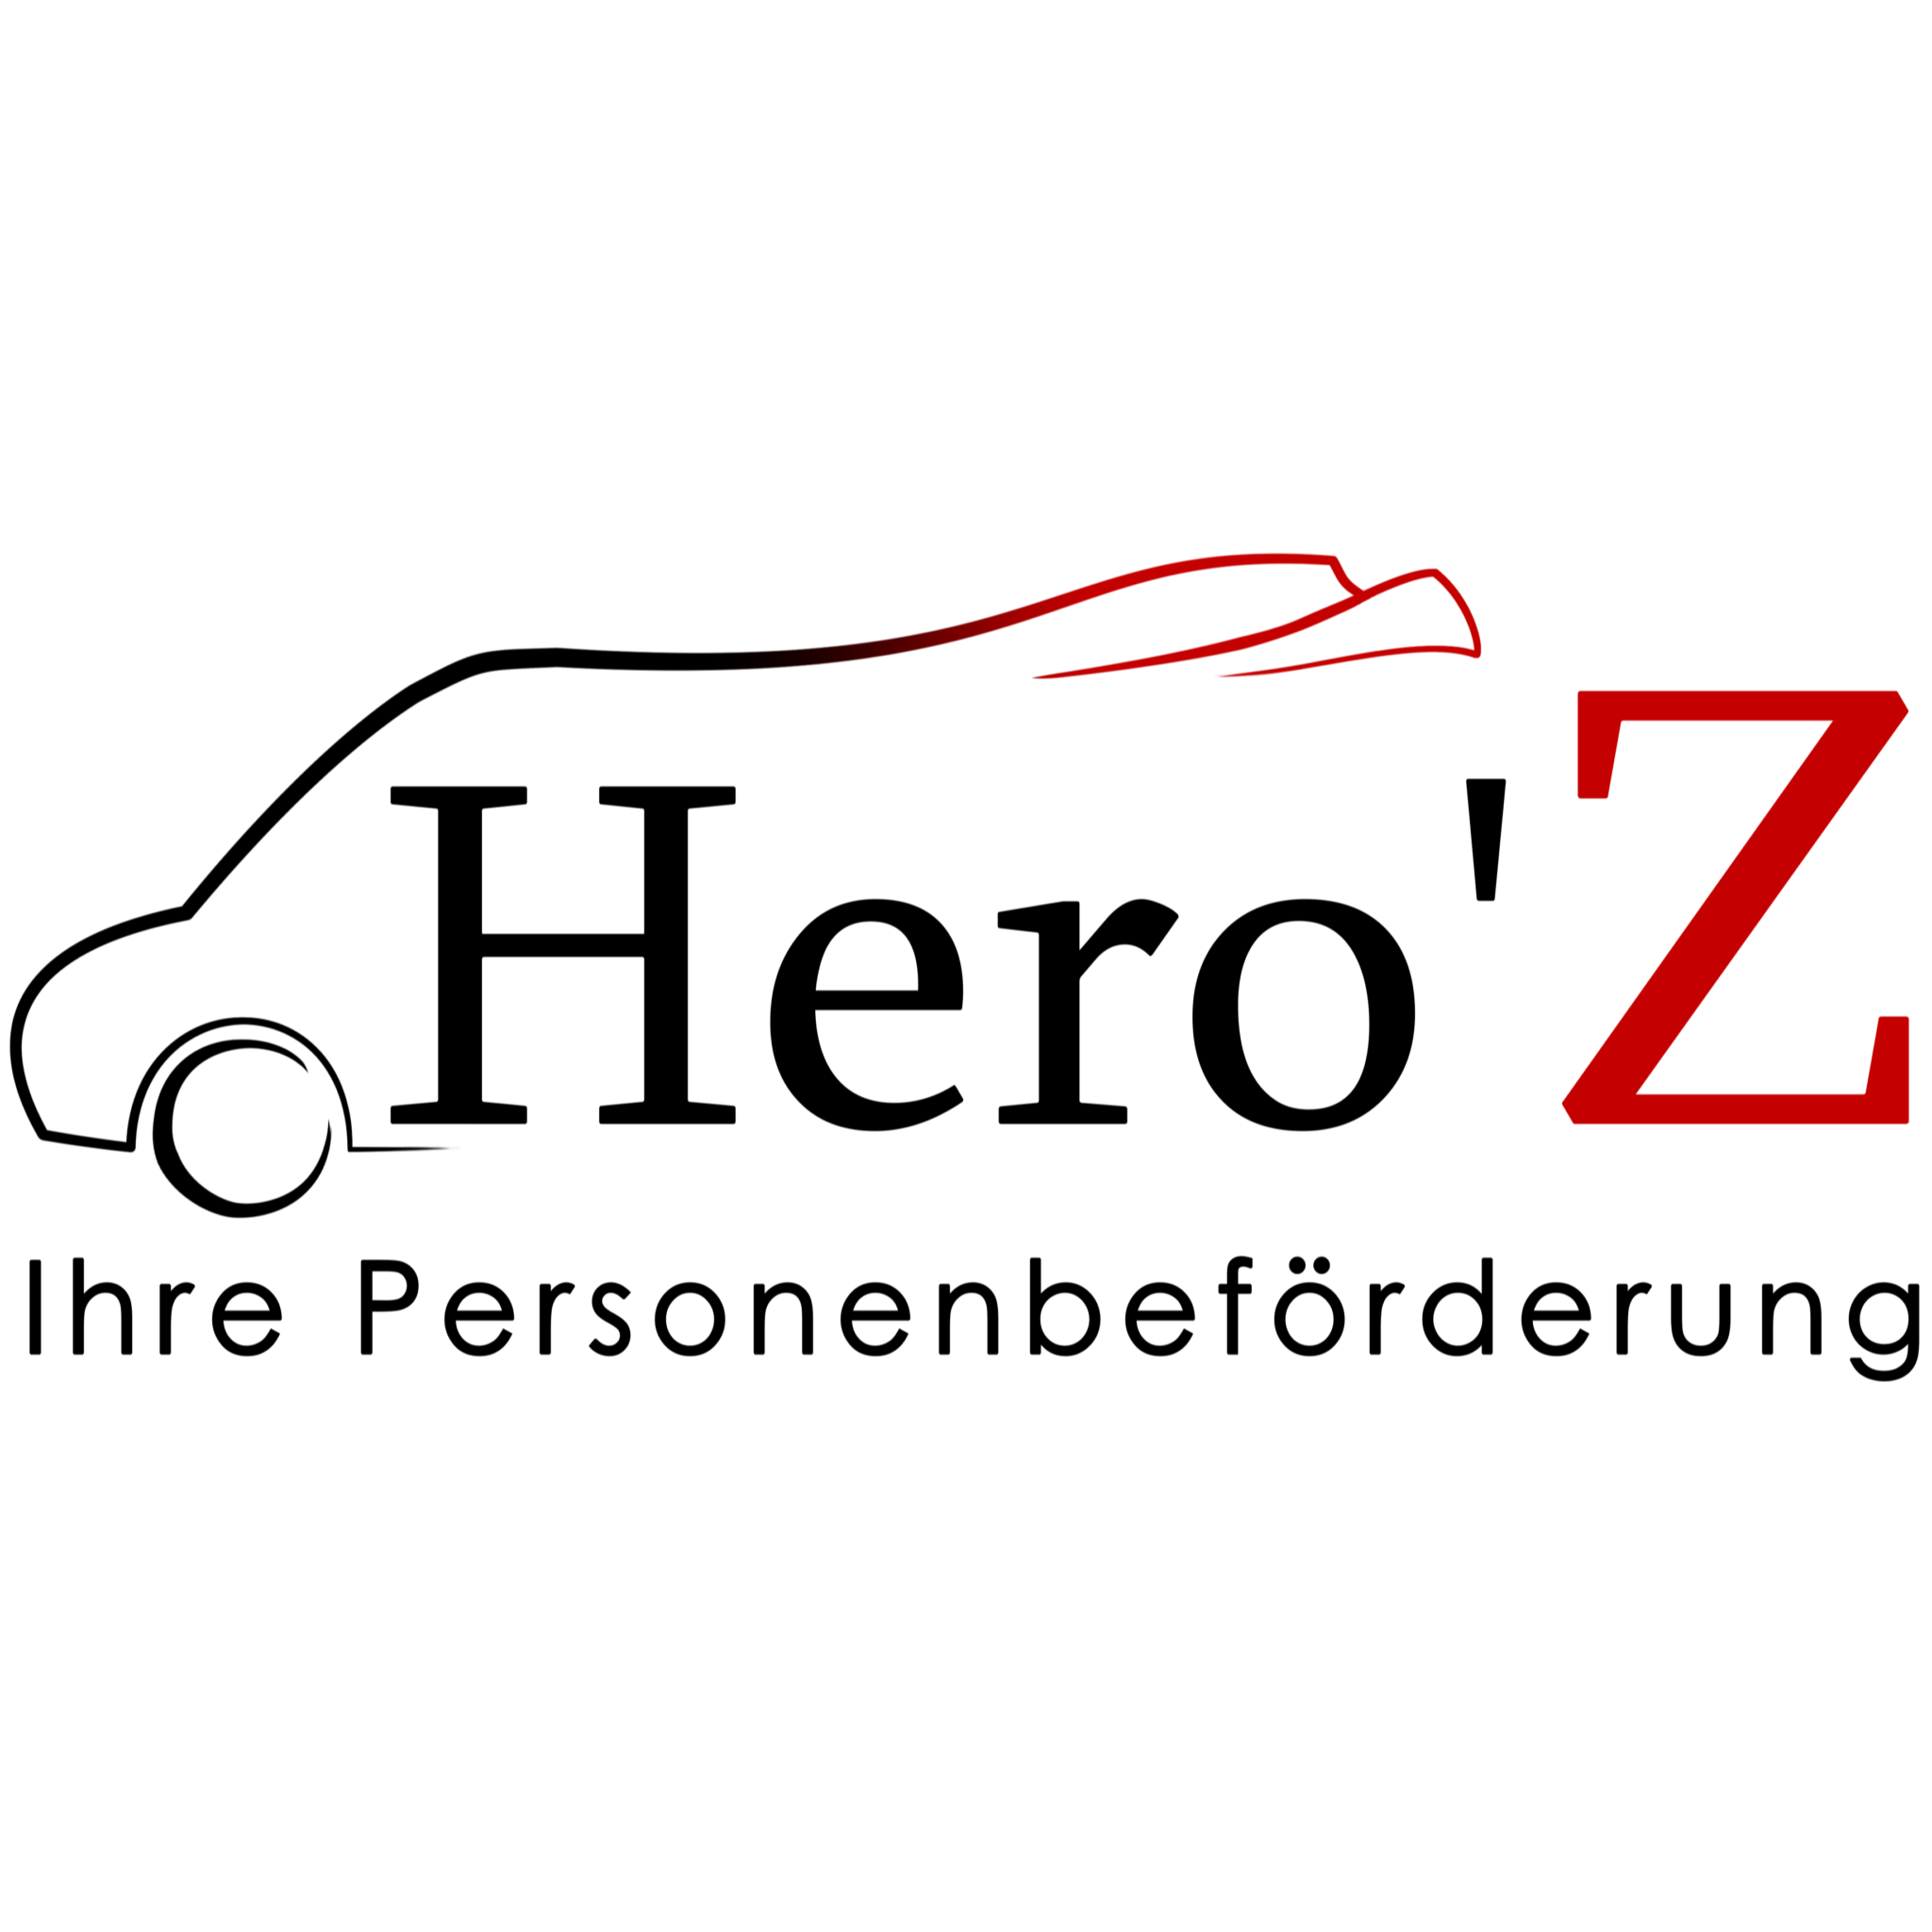 Logo Hero'Z,  Ambulanz, Schülerbeförderung uvm.